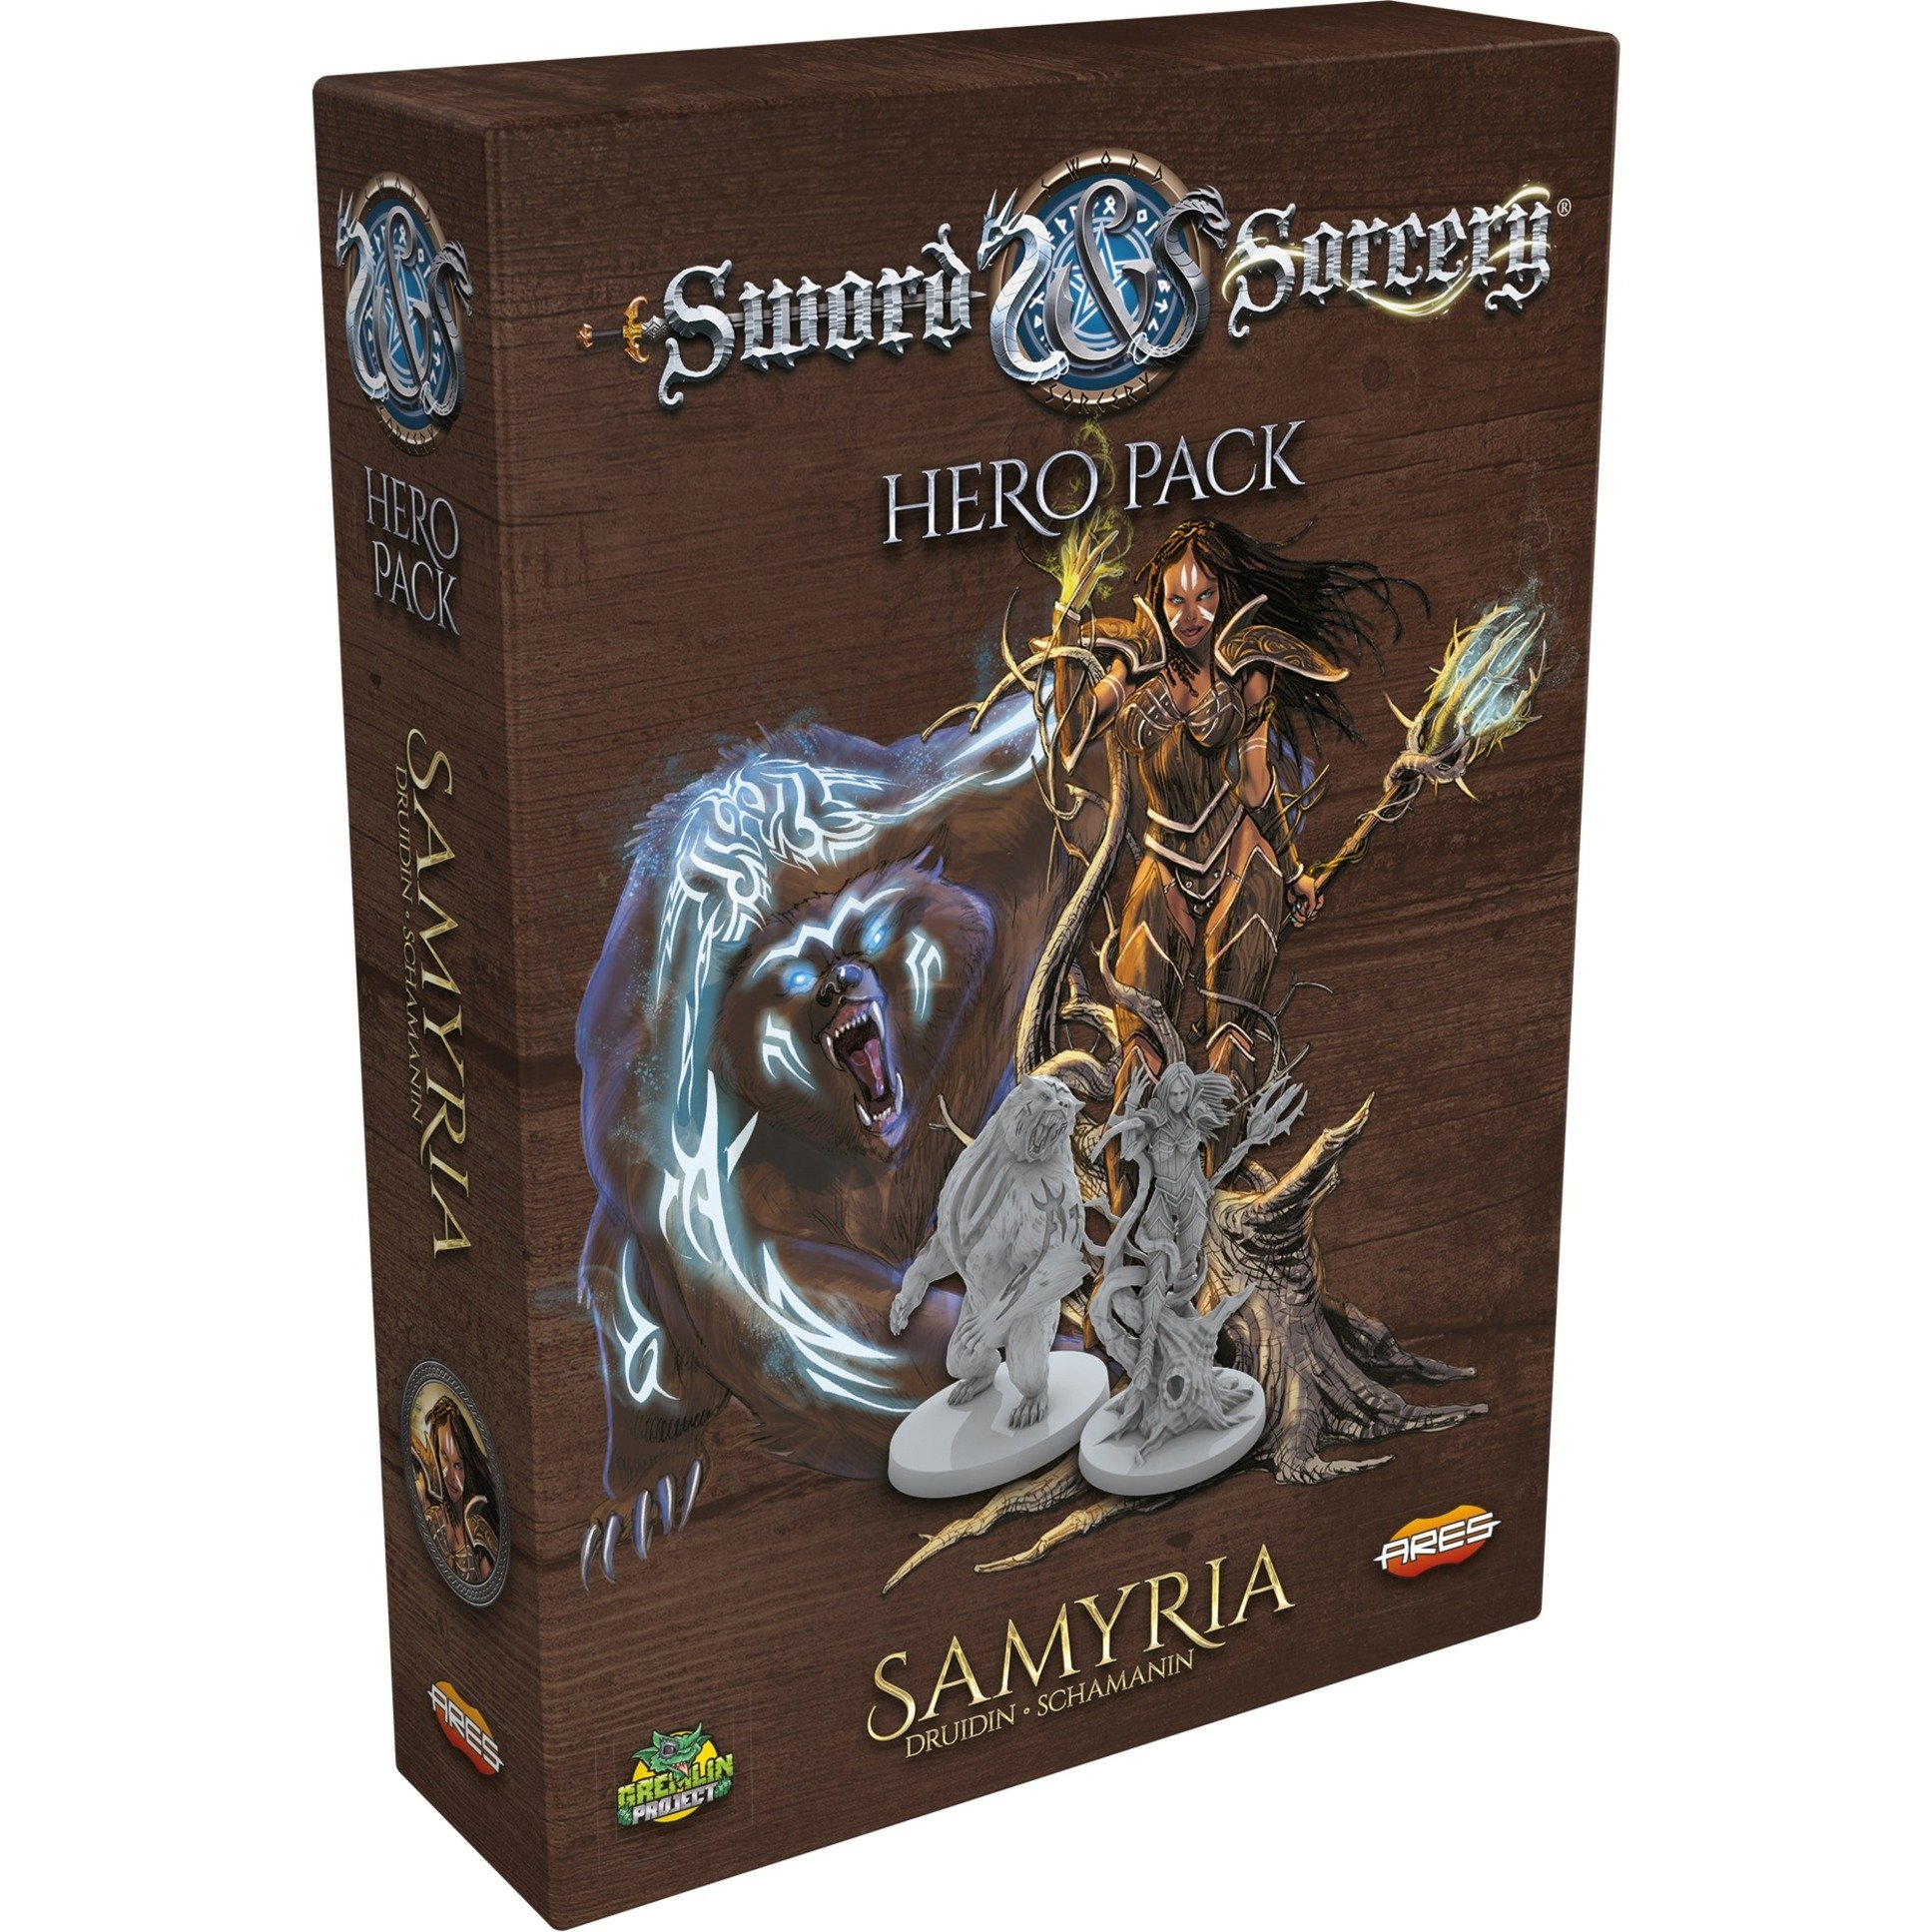 Image of Alternate - Sword & Sorcery - Samyria, Brettspiel online einkaufen bei Alternate